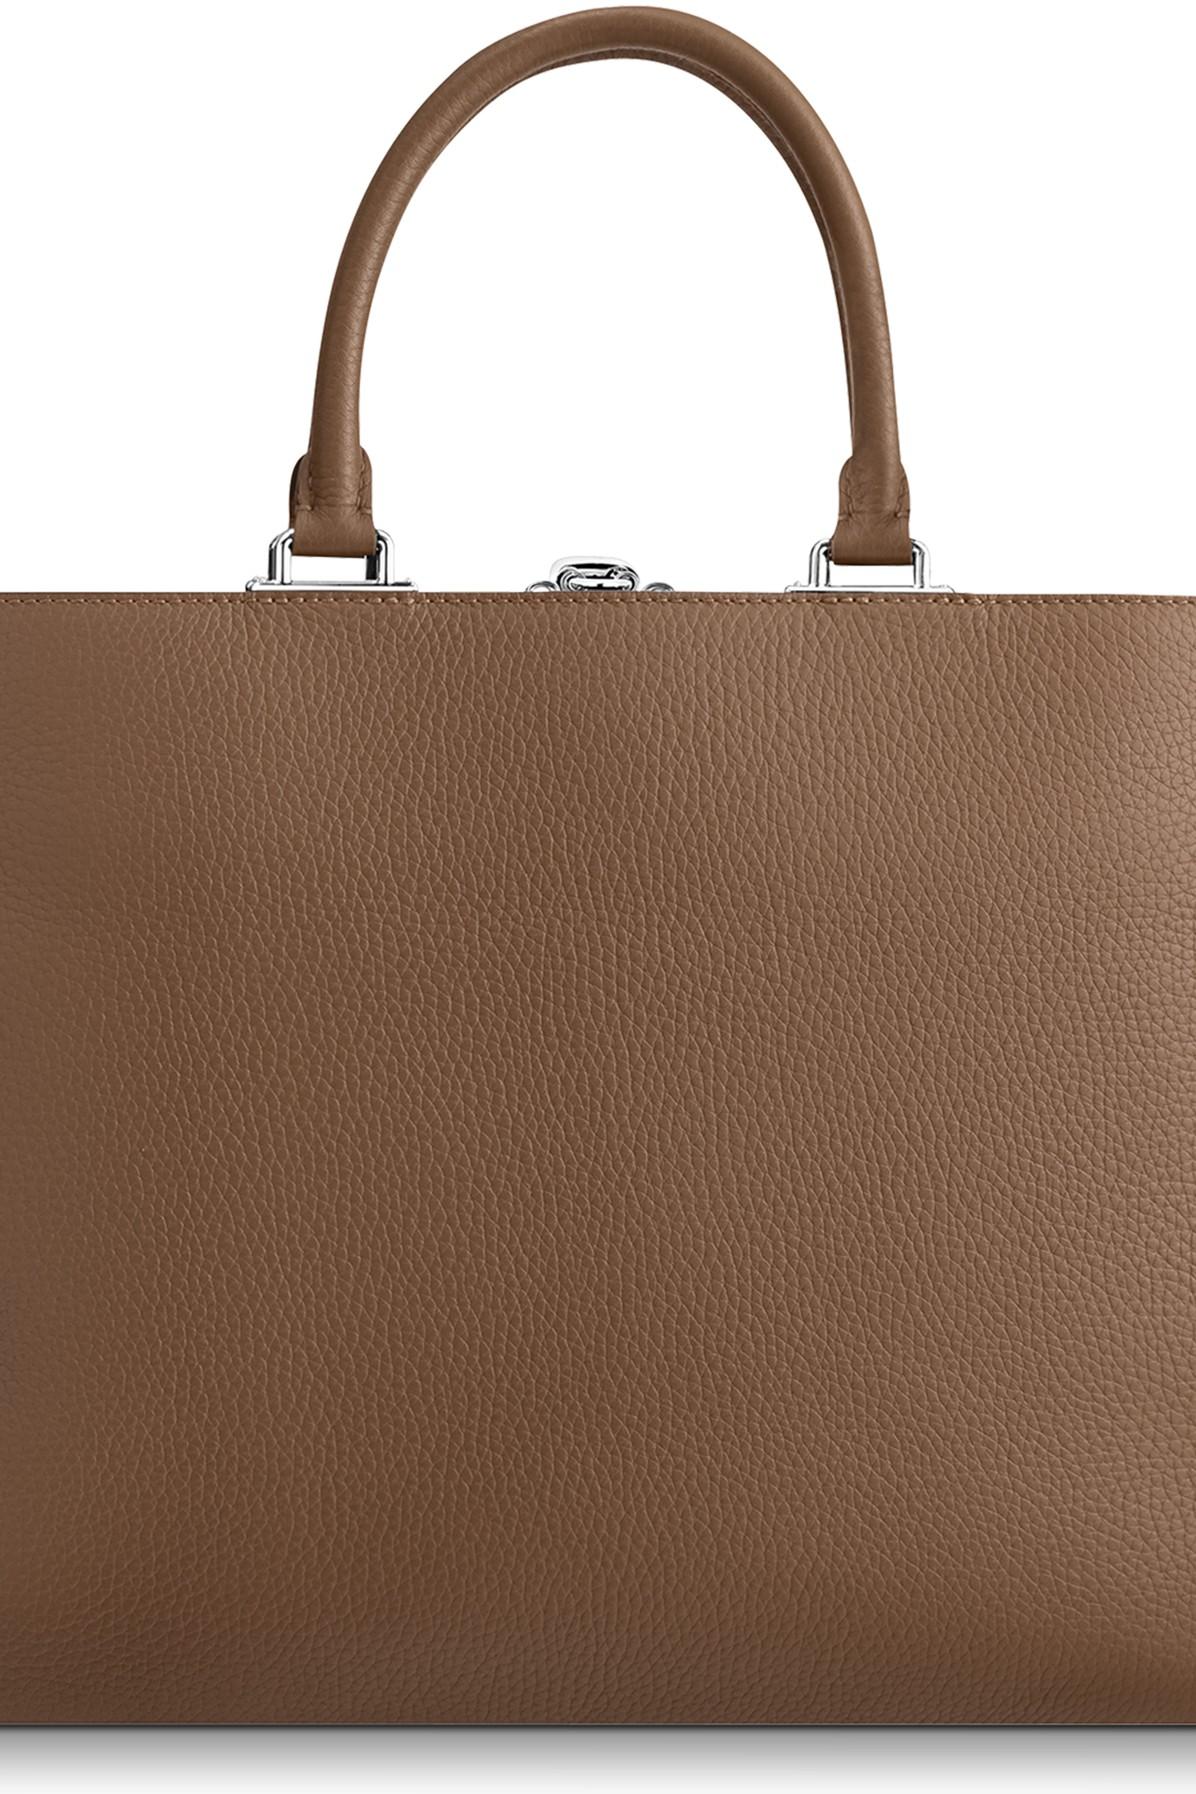 Louis Vuitton Havane Taurillon Leather Armand Briefcase Bag Louis